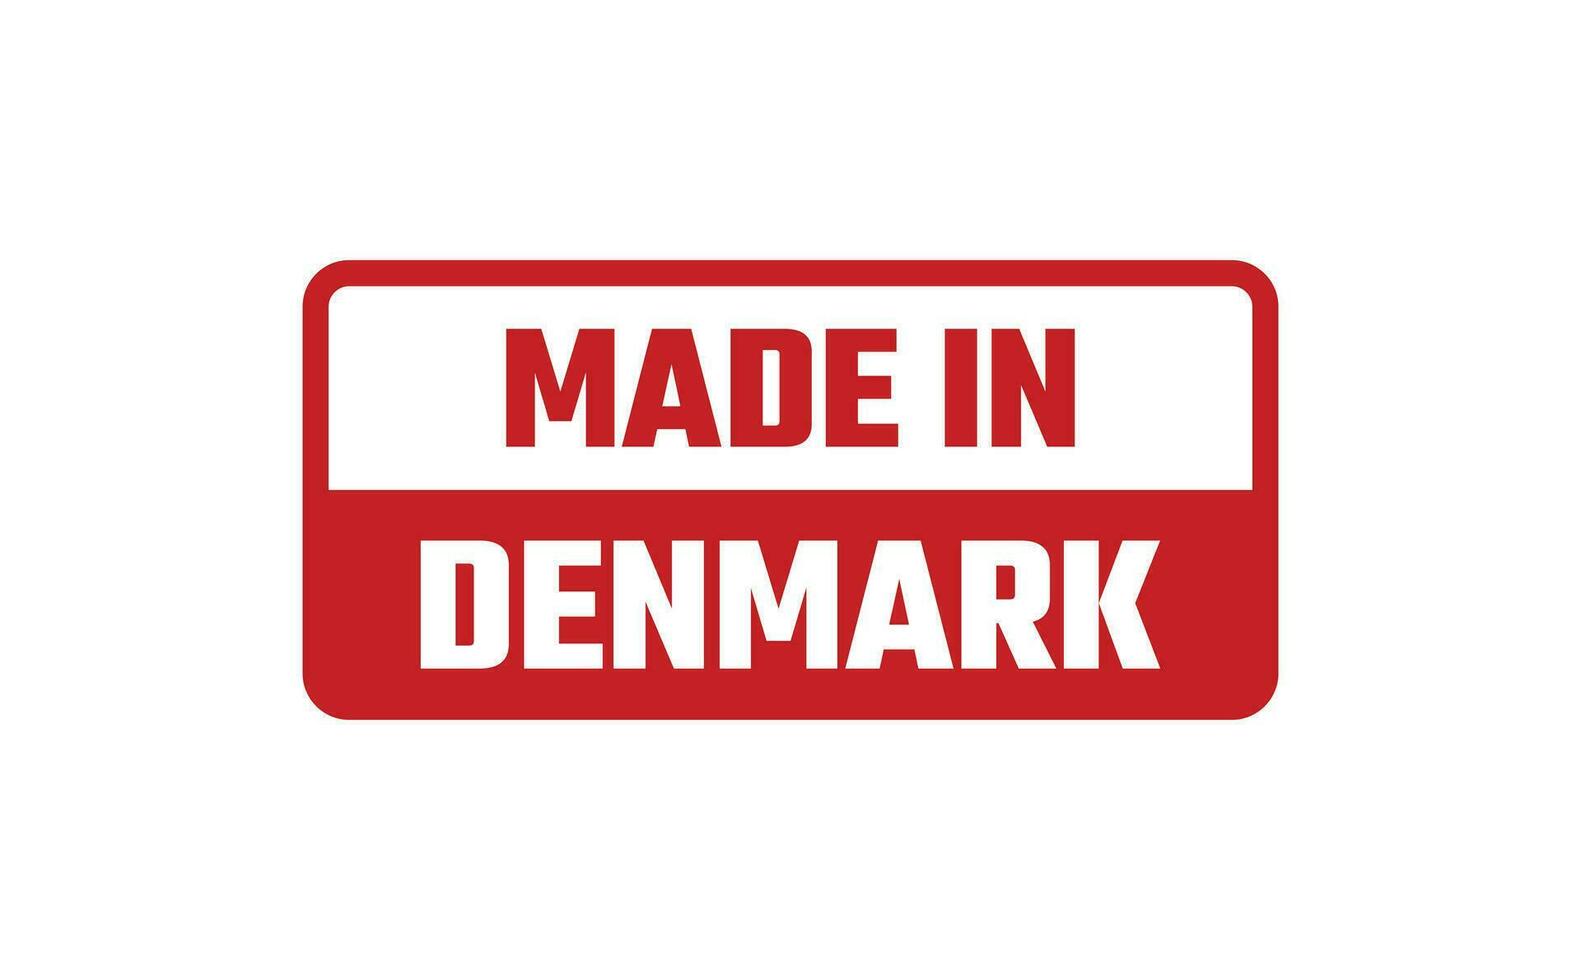 gemaakt in Denemarken rubber postzegel vector